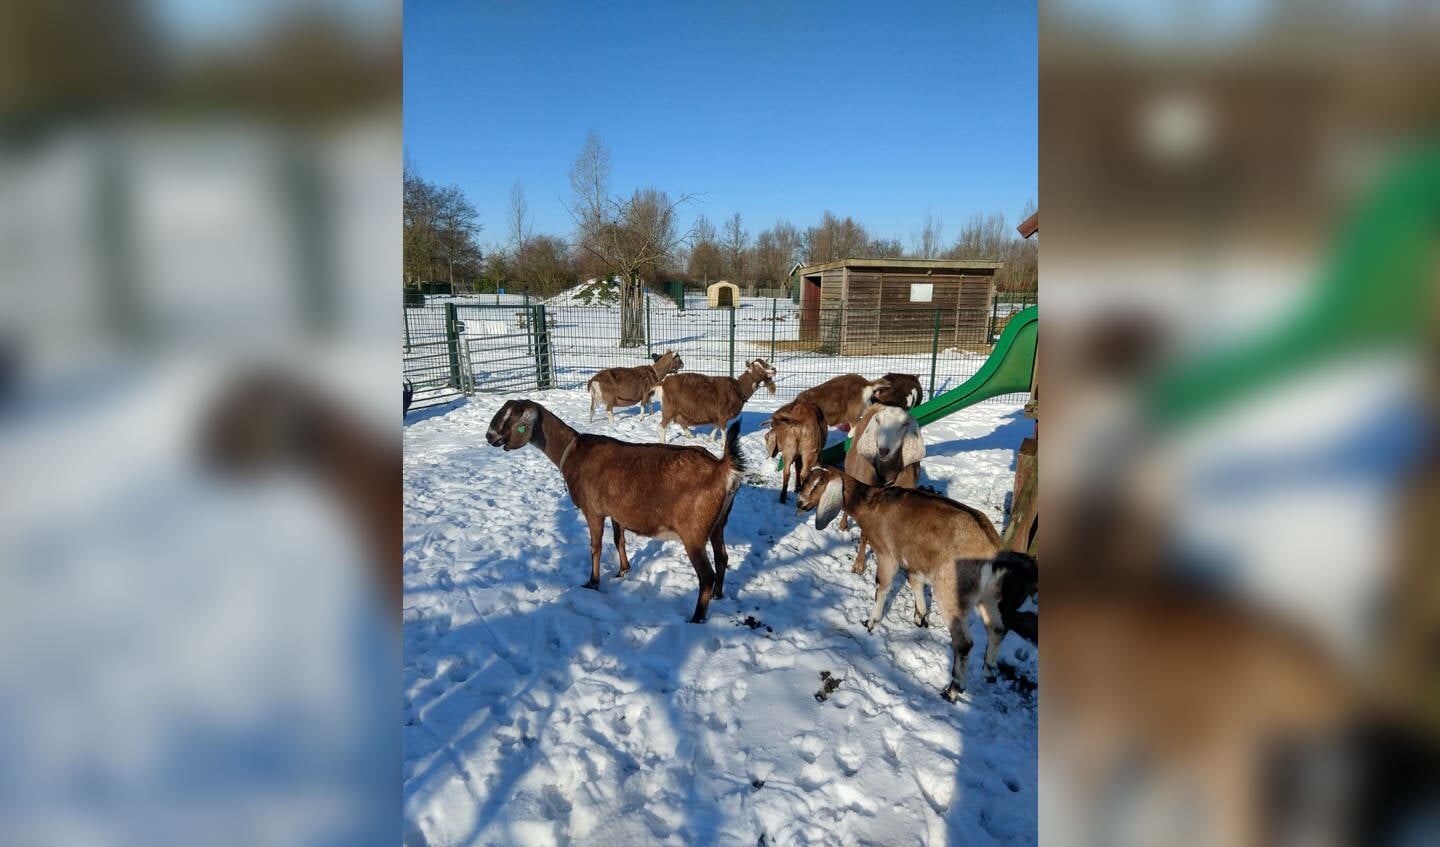 De dieren genieten van de sneeuw